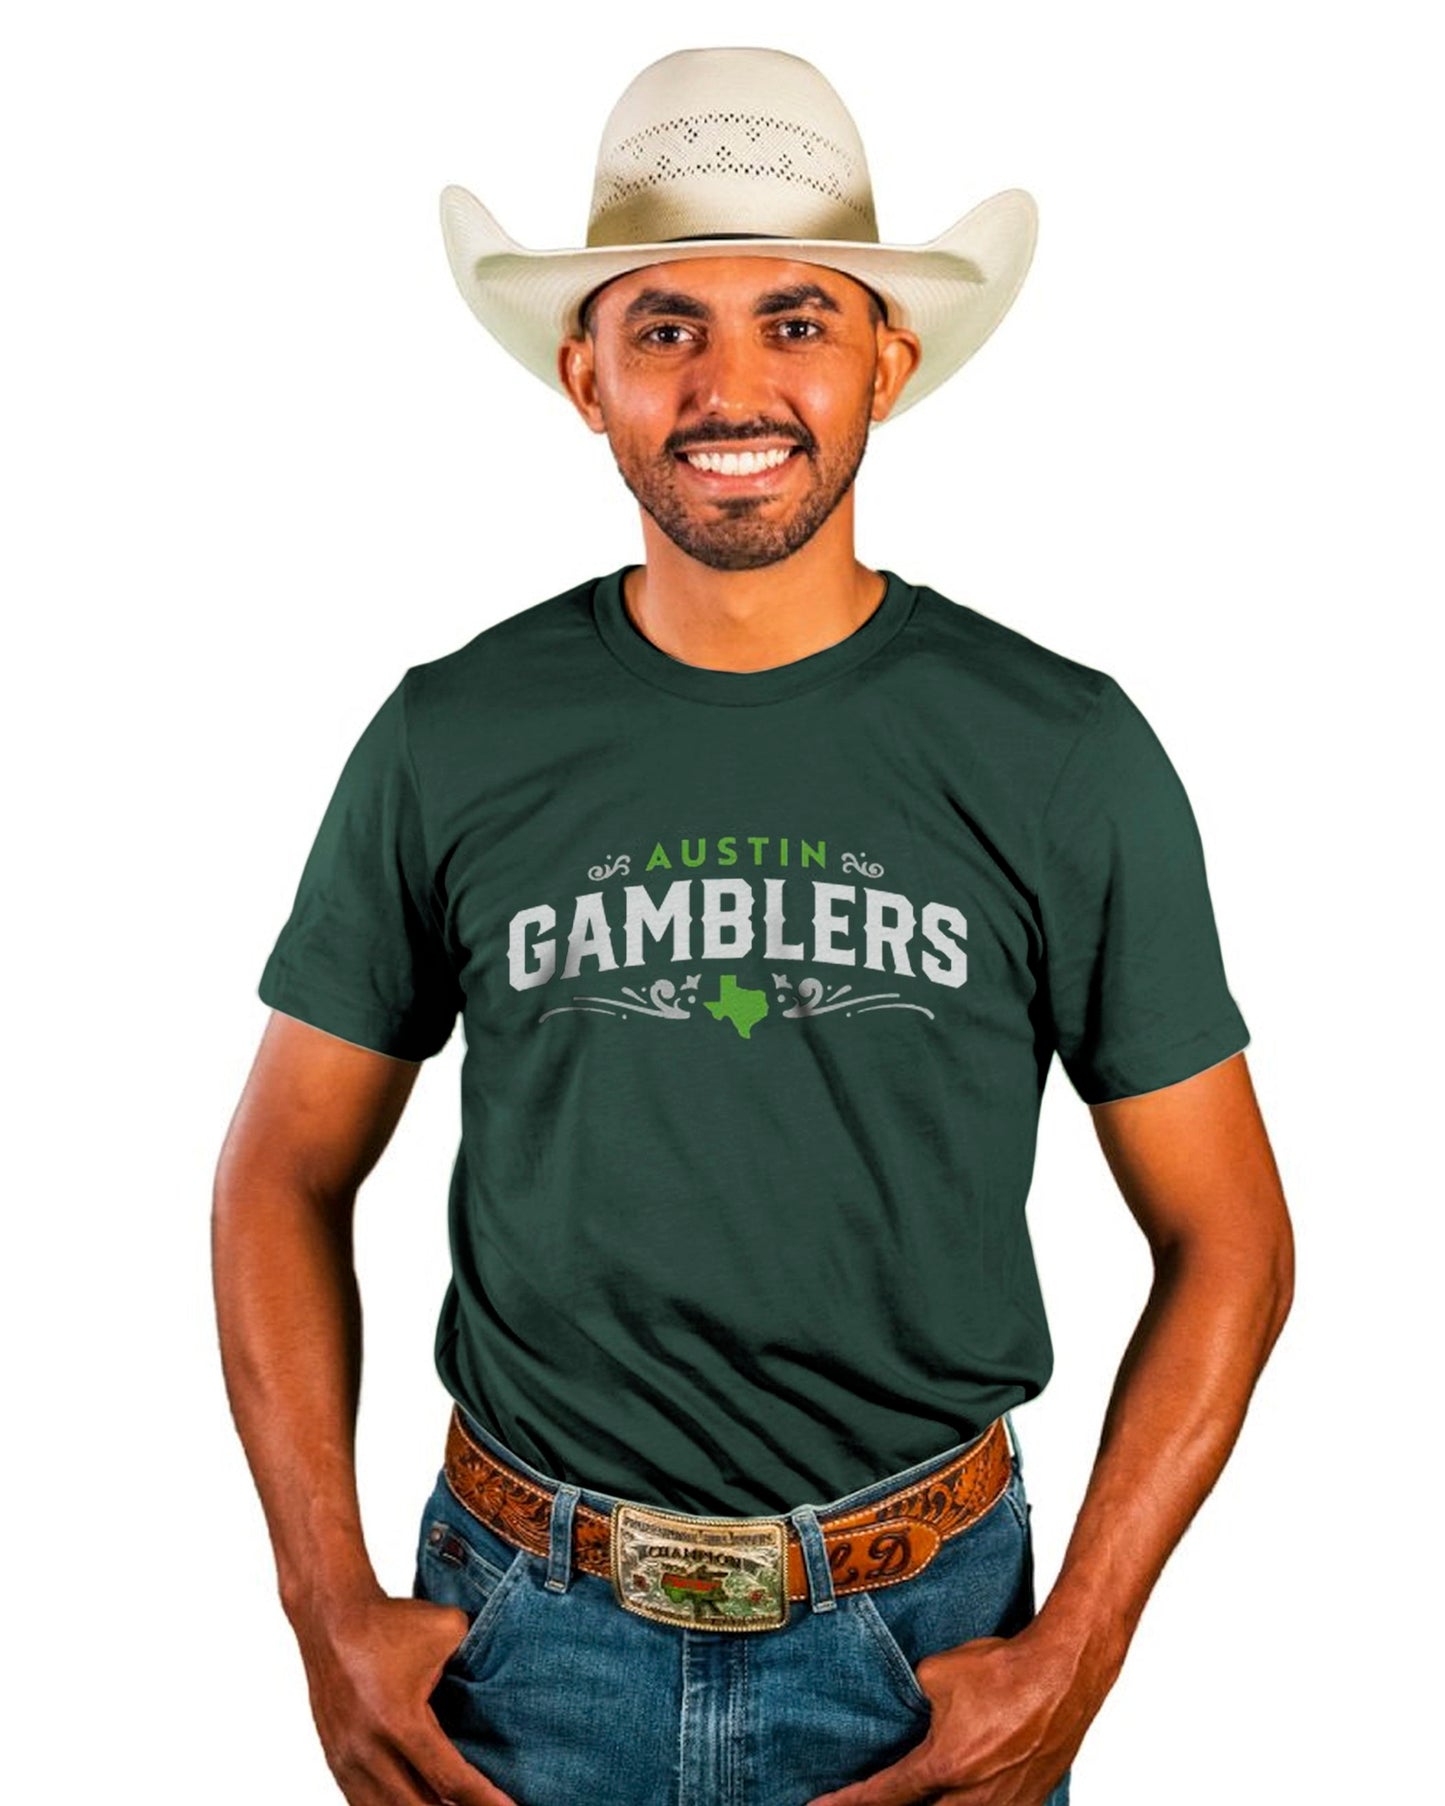 Gamblers Western Wordmark on Dark Green Tee